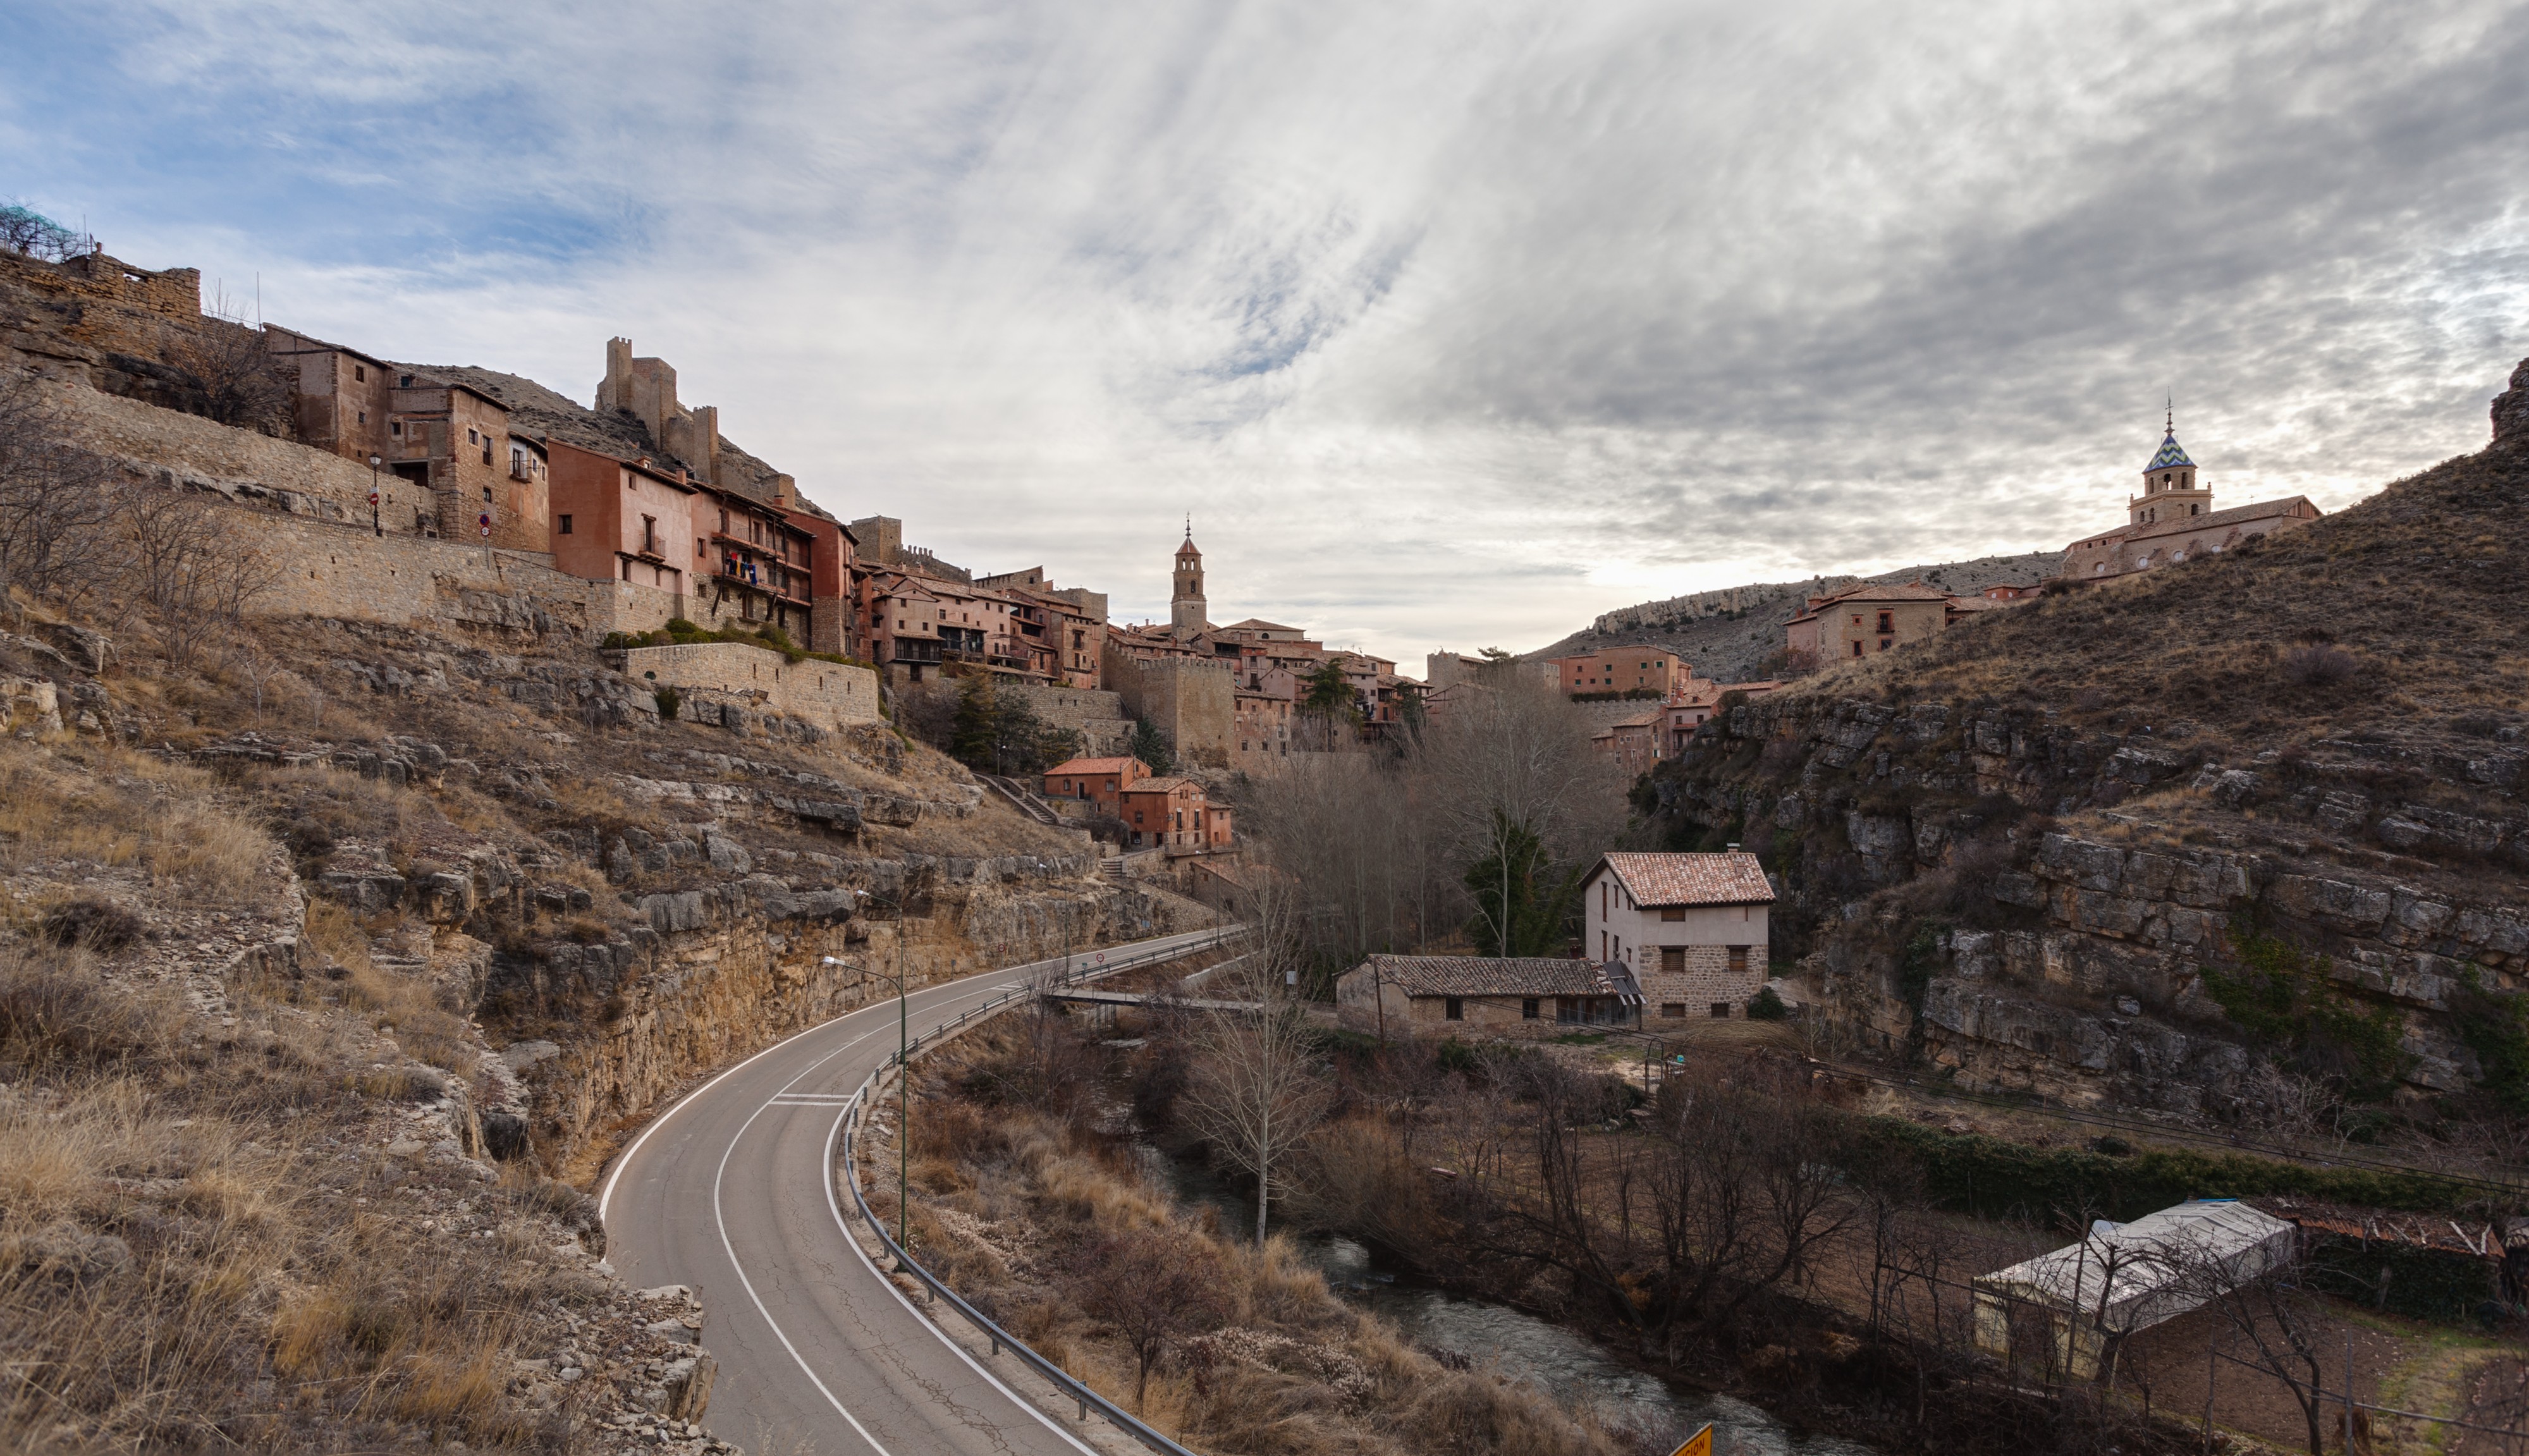 Albarracín, Teruel, España, 2014-01-10, DD 015-017 HDR